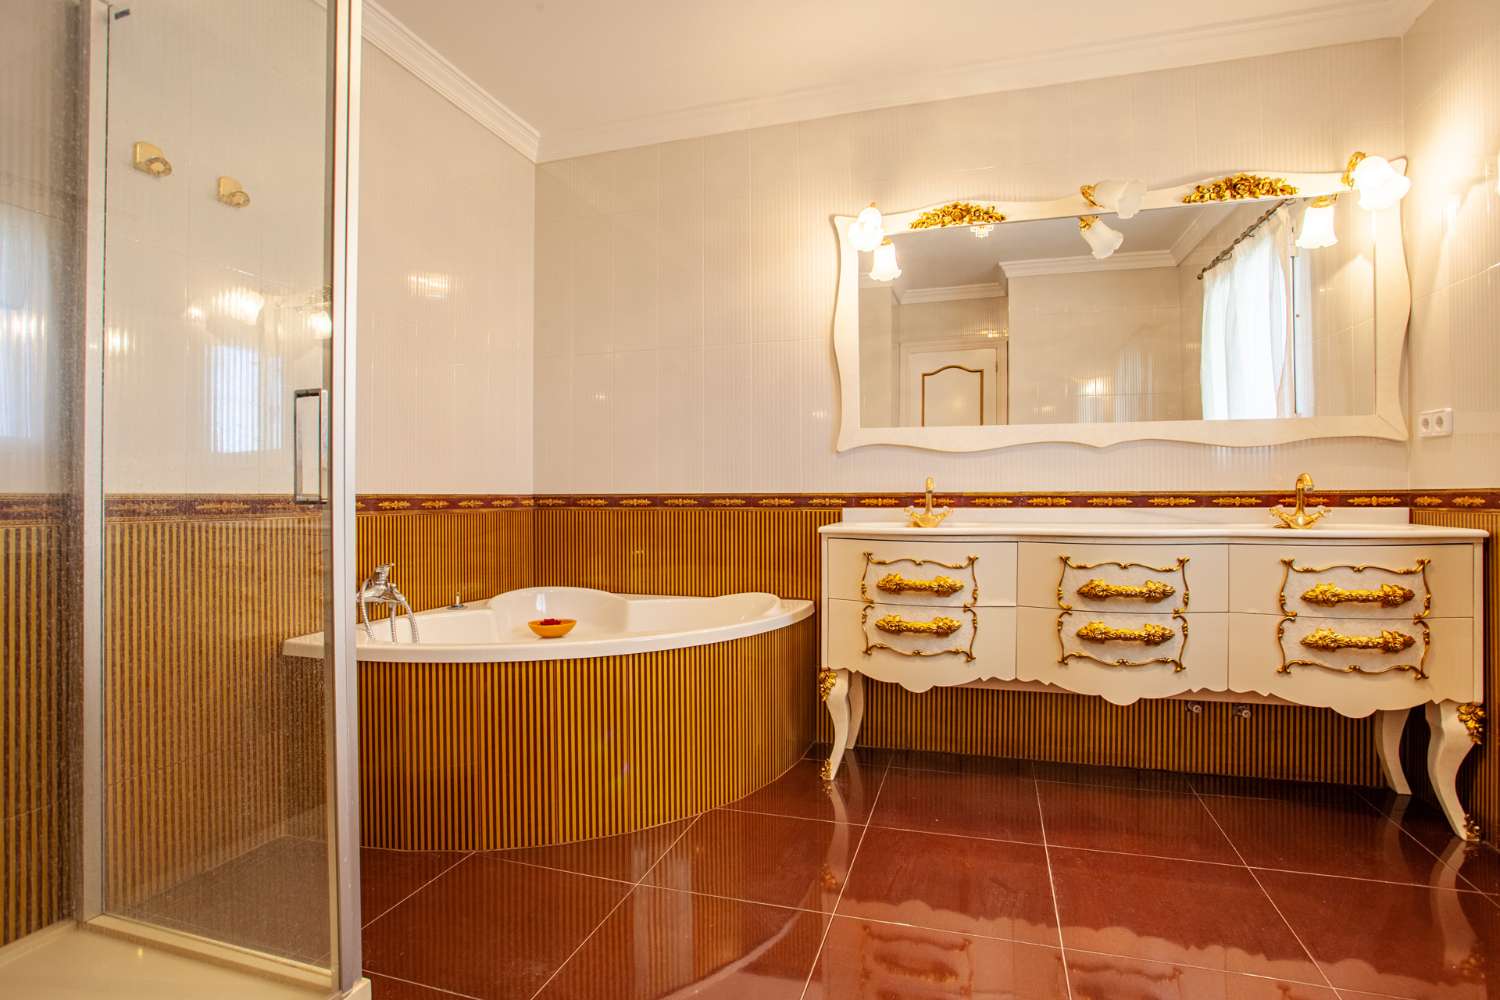 Vysoce stojící, luxusní vila v jedné z nejprestižnějších oblastí Costa Blanca.